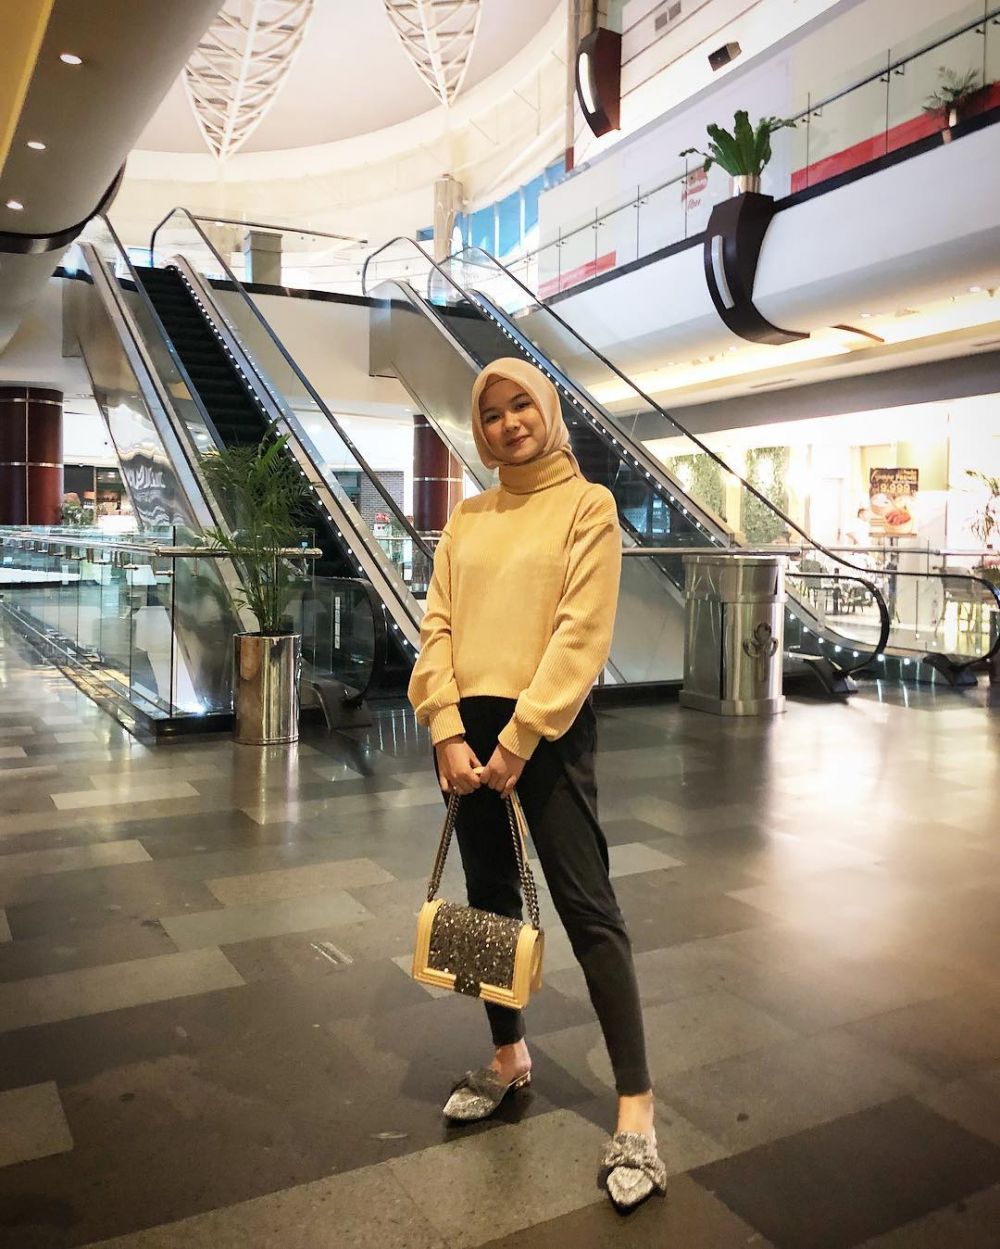 10 Pesona Zhadela Putri, pacar Asnawi Bahar bek andalan Timnas U-19